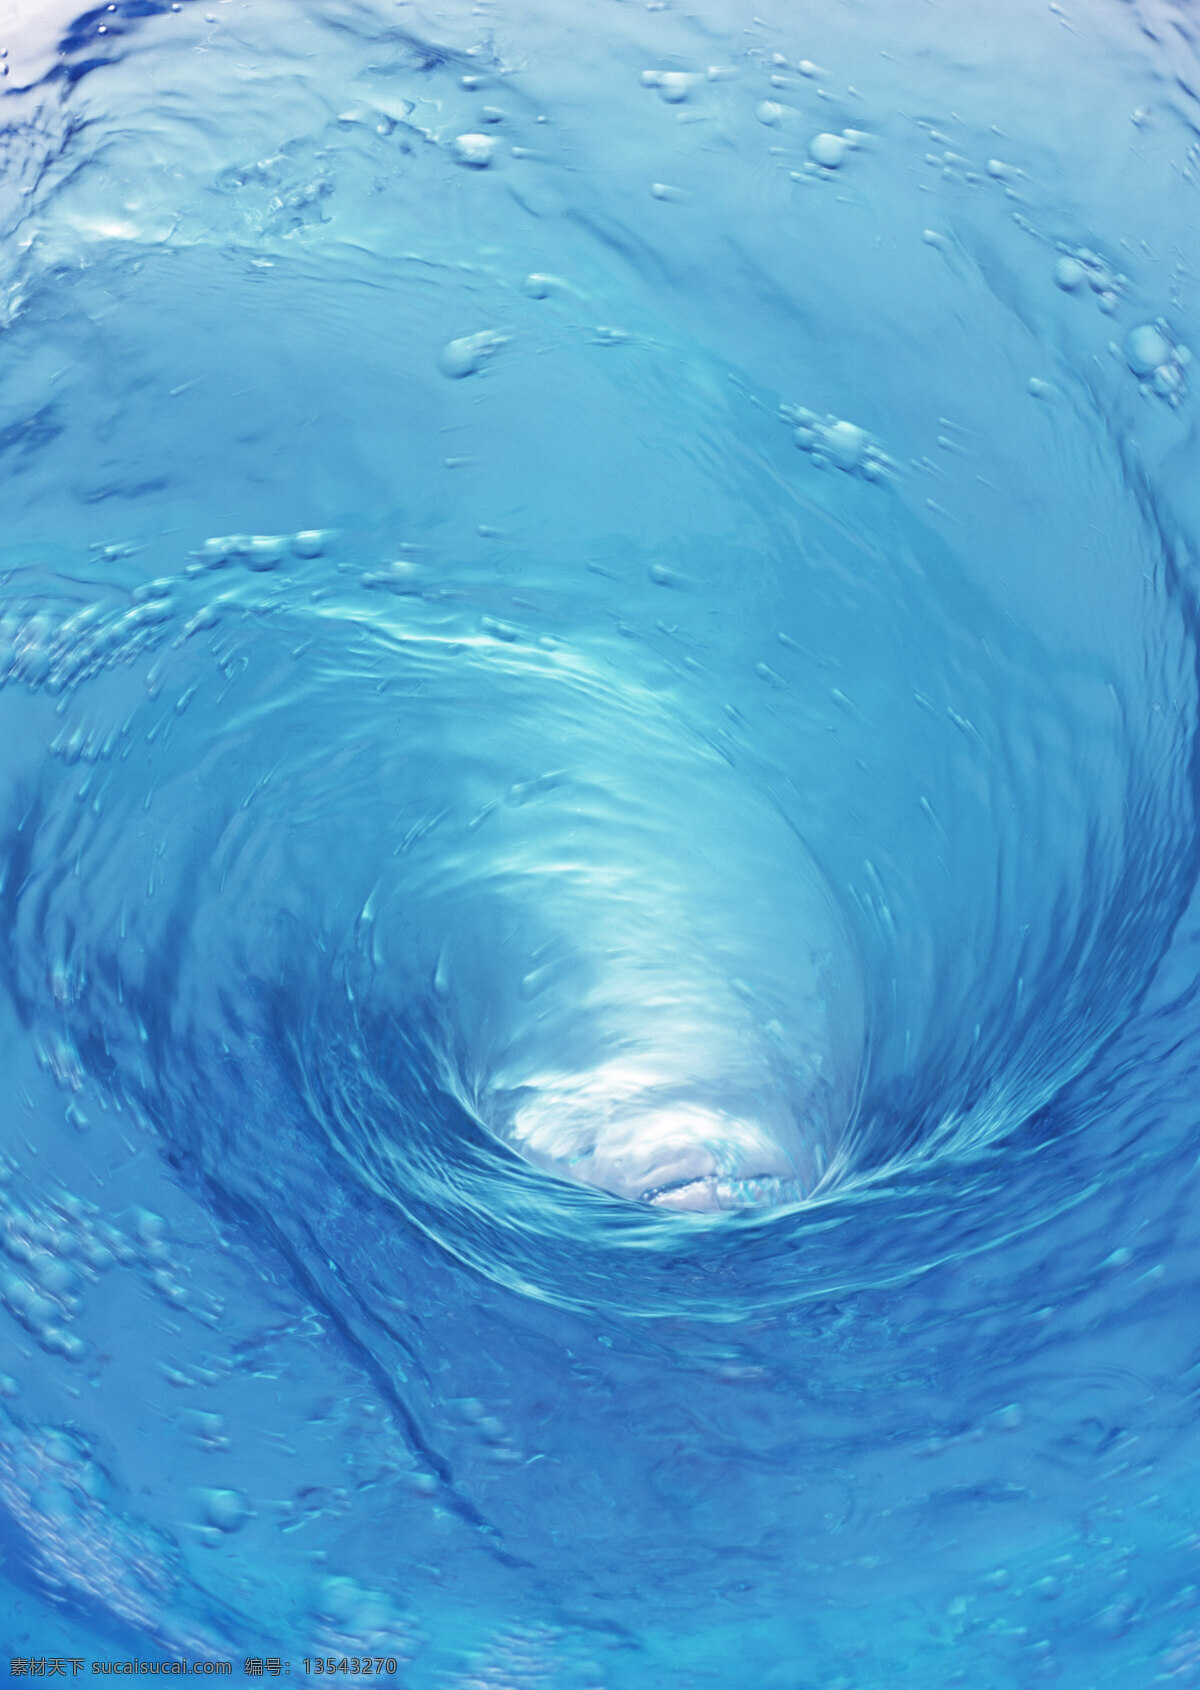 水漩涡 水纹 水波 波纹 水的印象 摄影图库 摄影素材